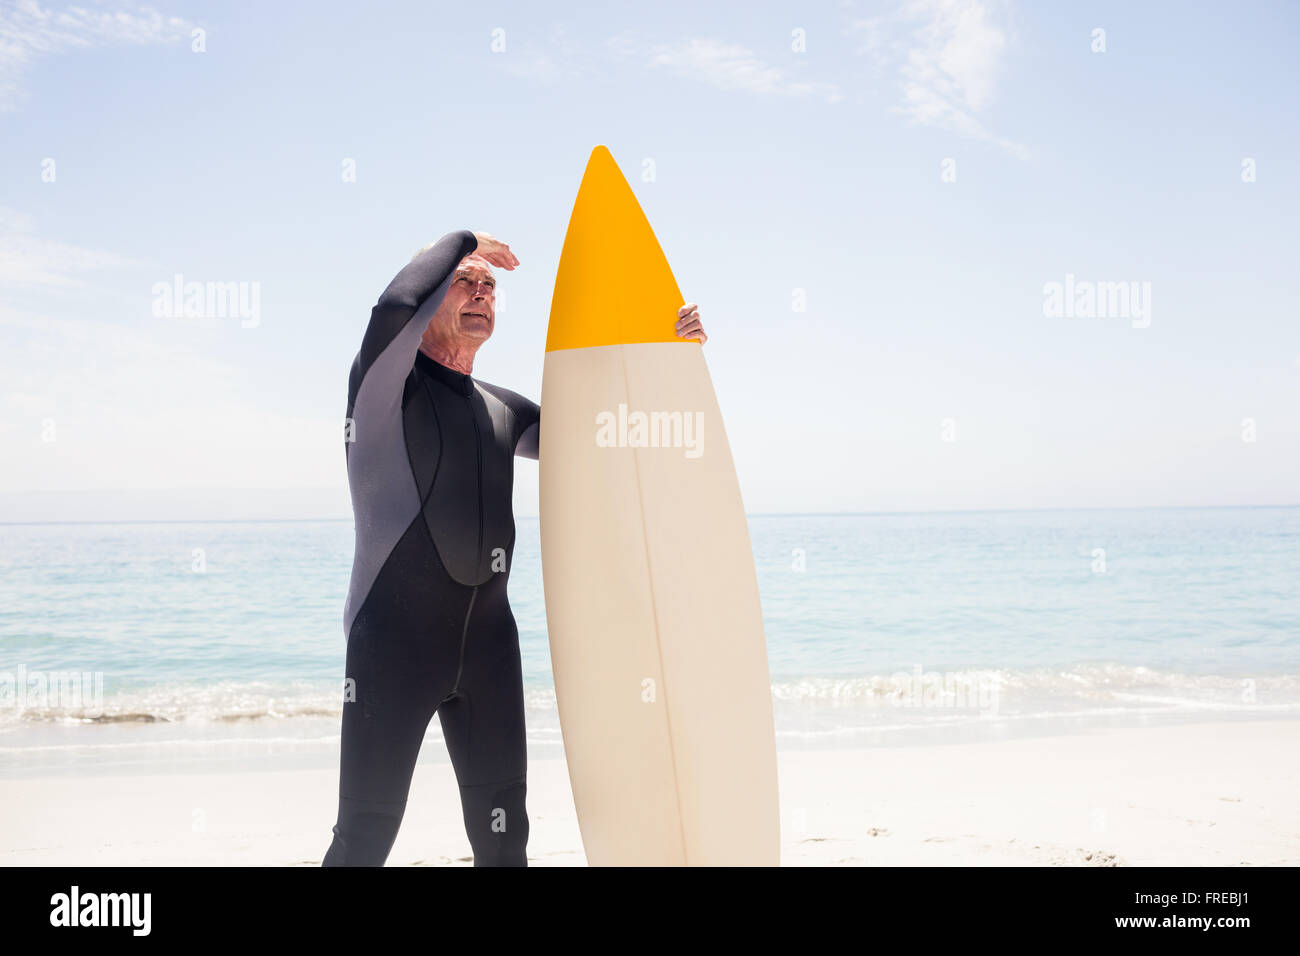 Senior uomo con tavola da surf schermare gli occhi in spiaggia Foto Stock